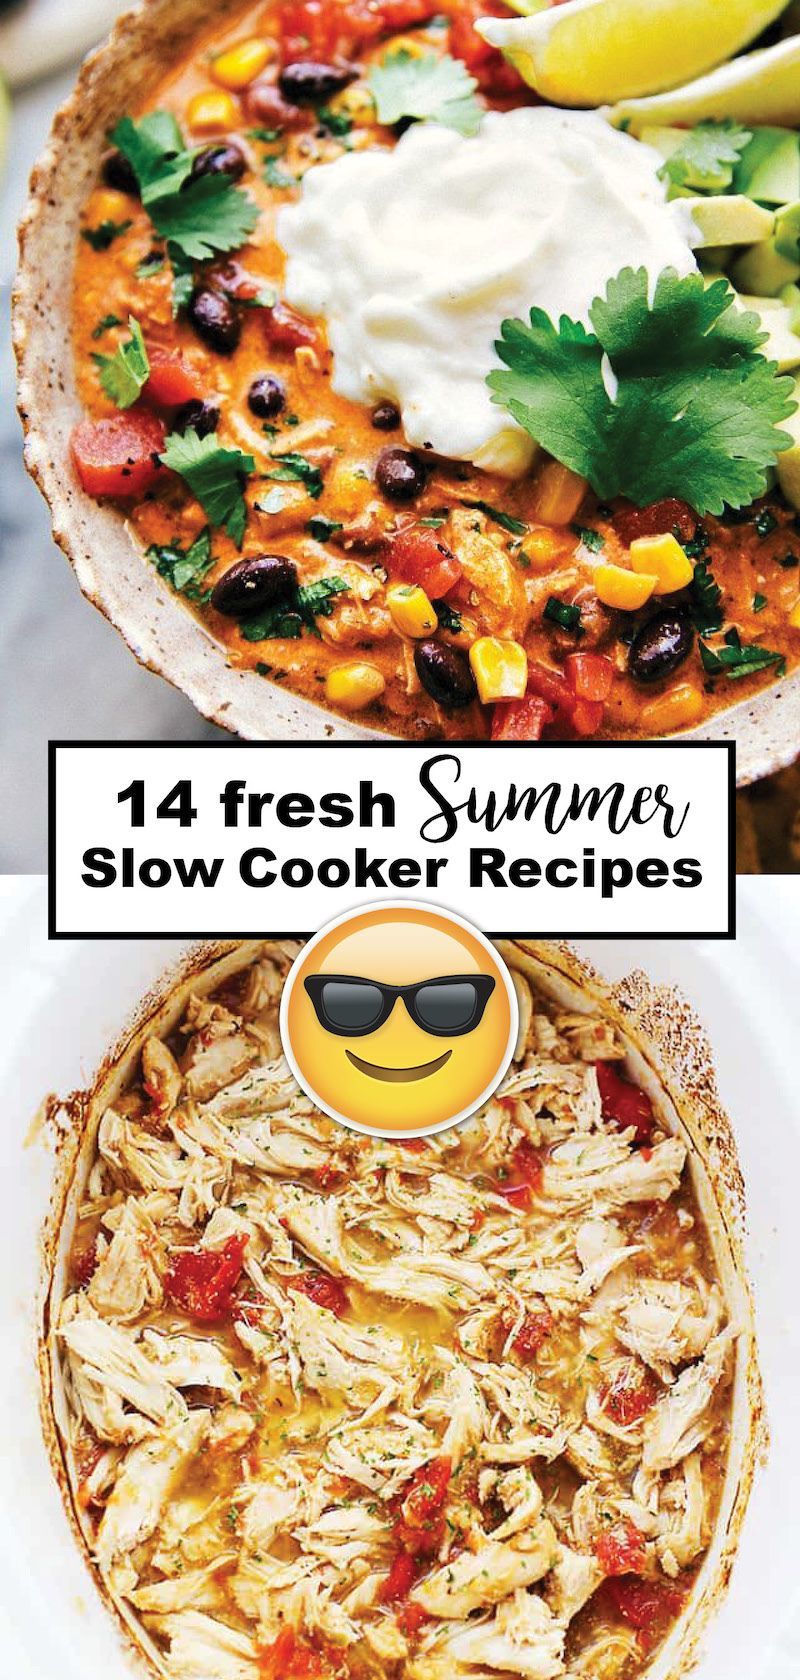 12 healthy recipes Summer crock pot ideas